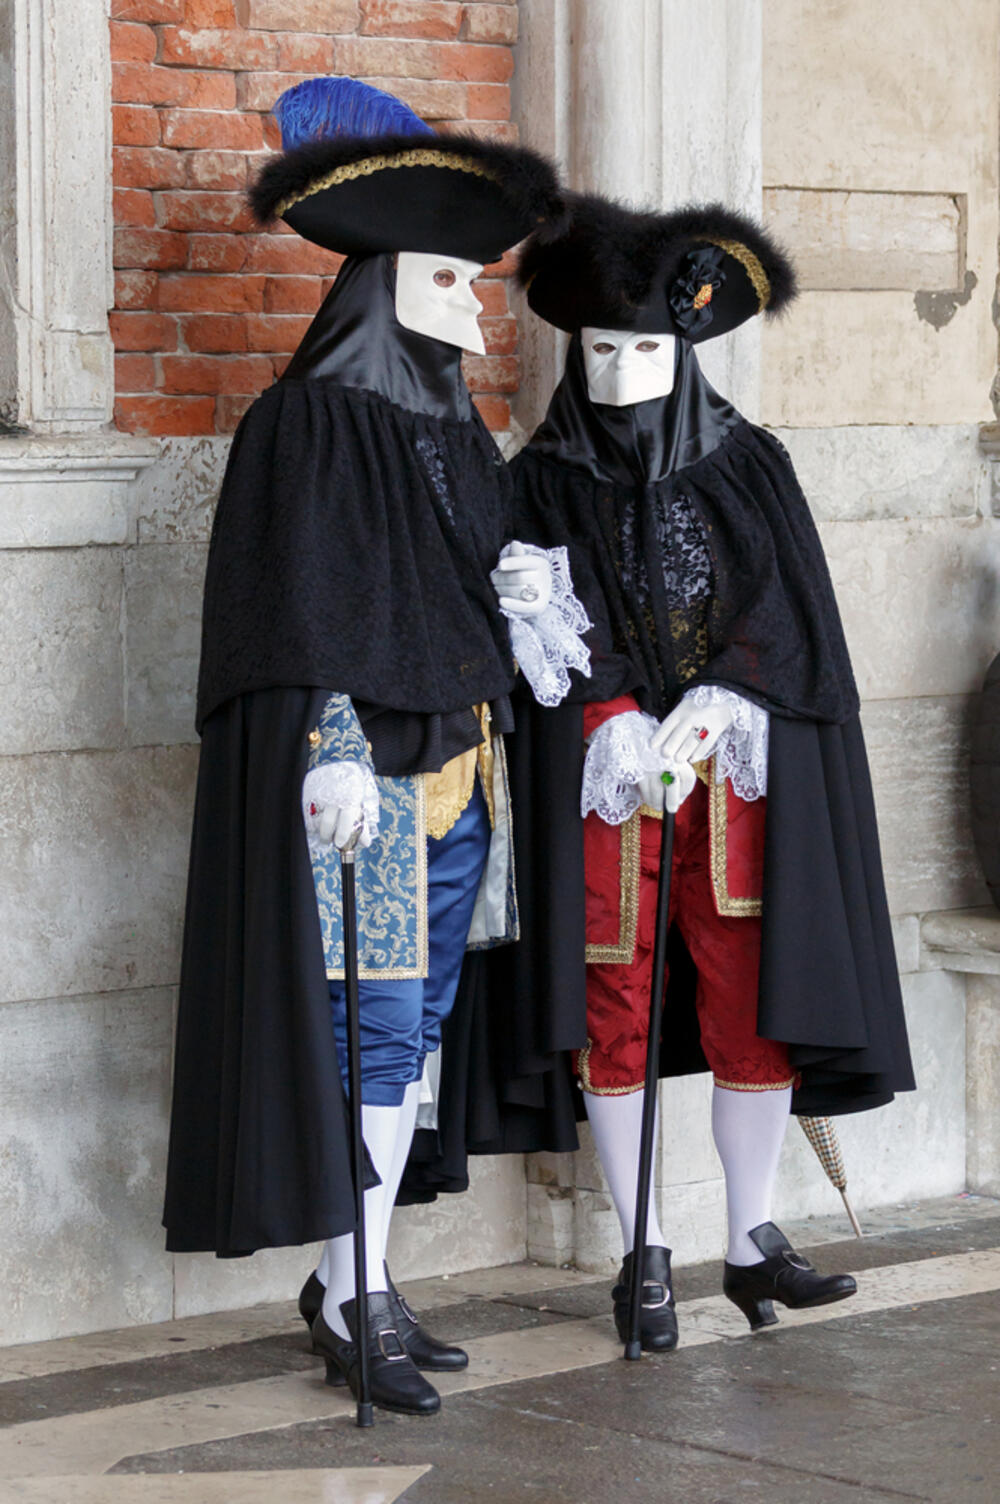 Karneval u Veneciji